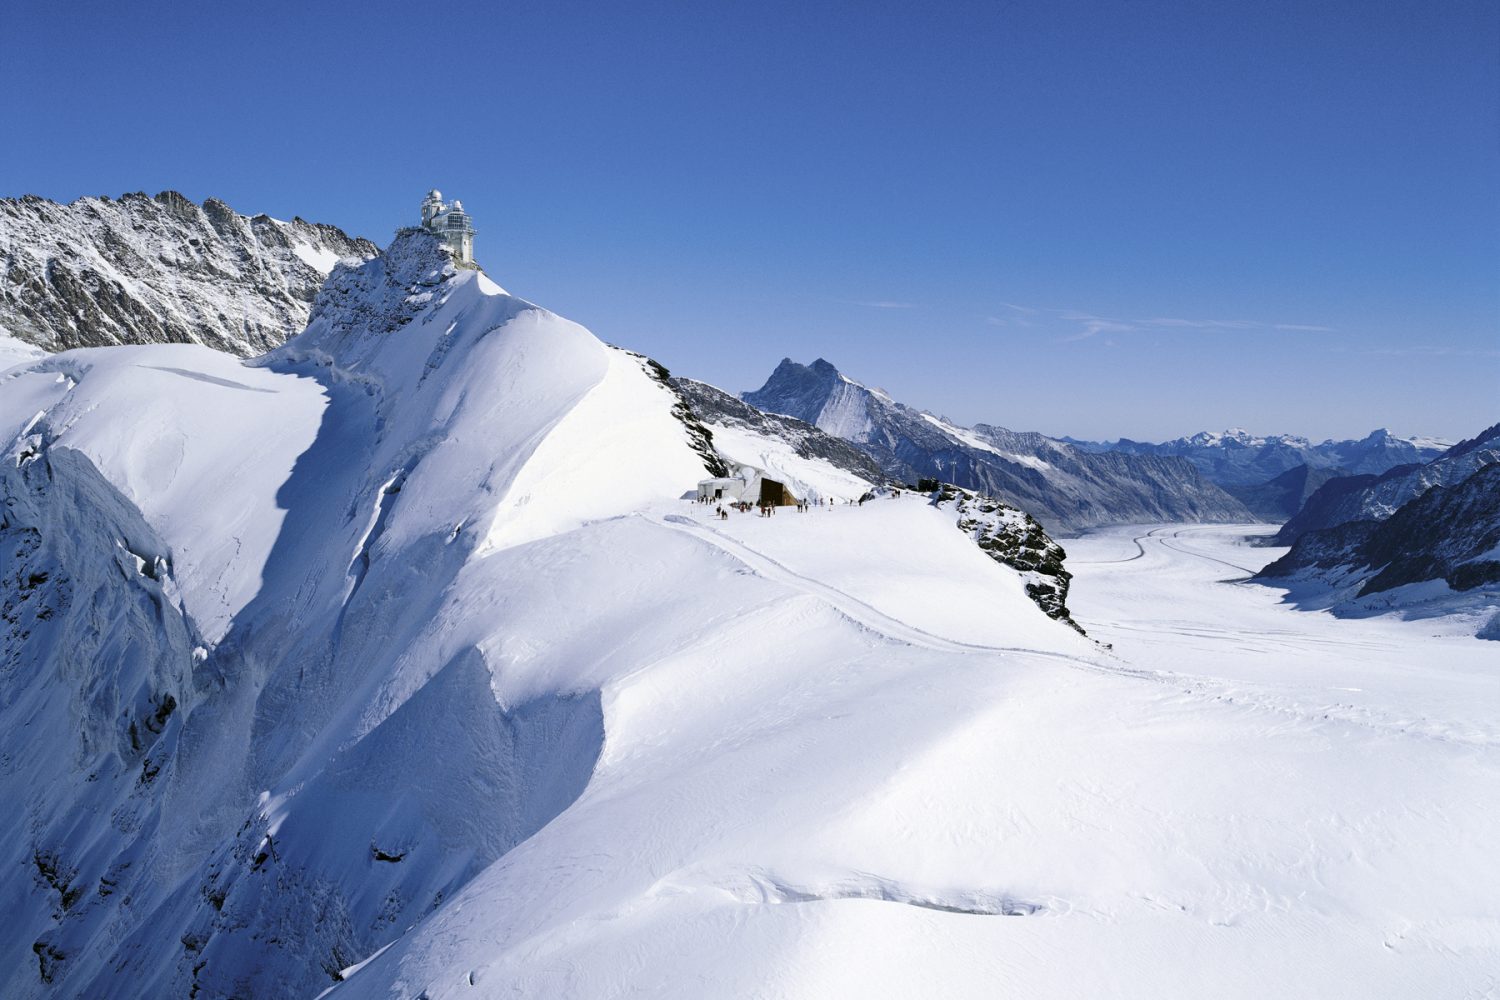 Met de trein van de Jungfraubahn naar het bezoekerscentrum Sphinx bij hetJungfraujoch. Het hoogstgelegen treinstation van Europa.